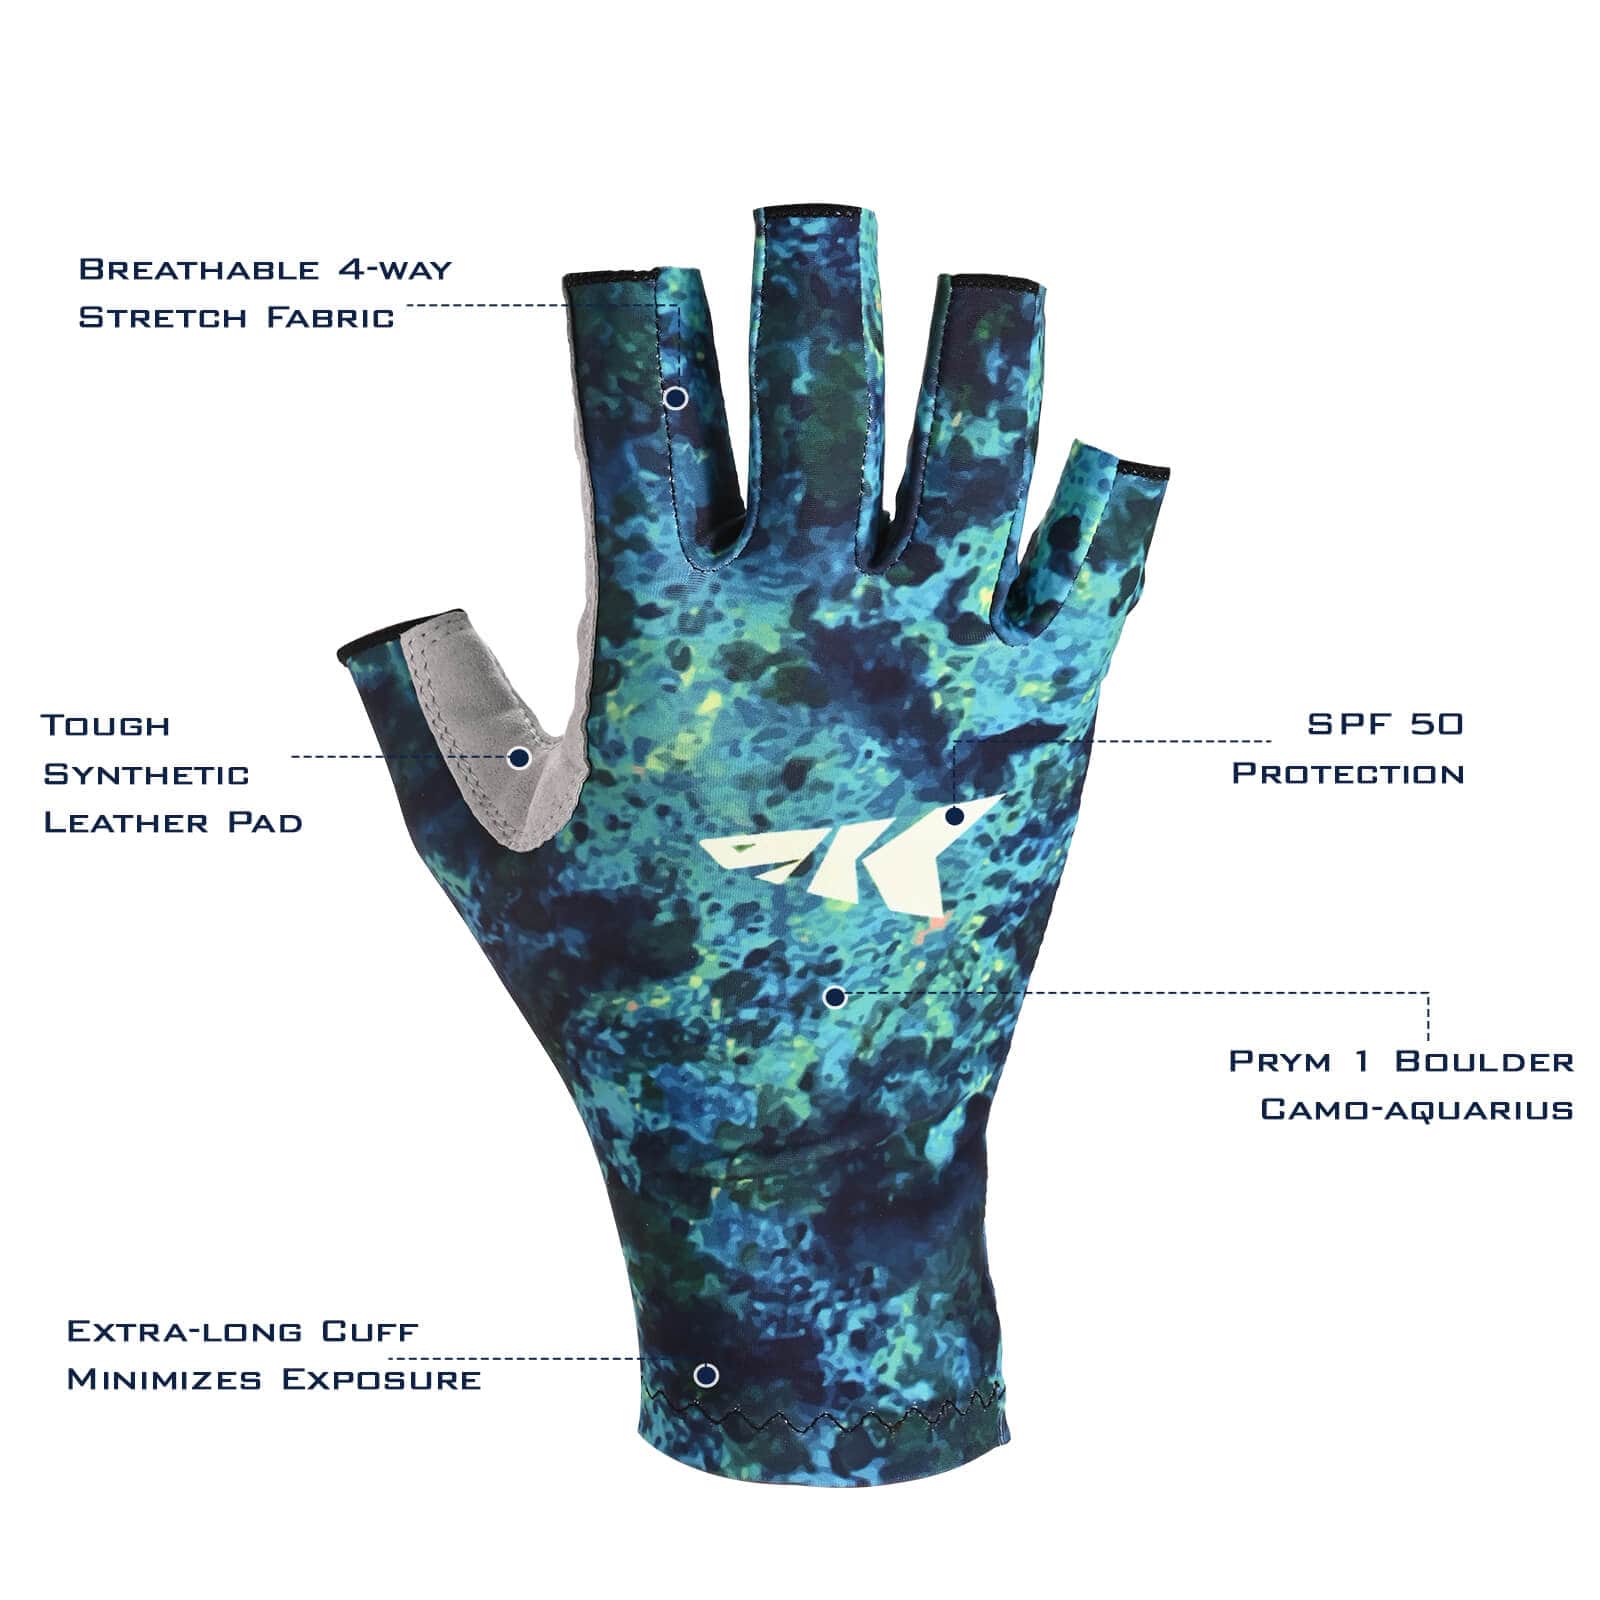  Fishing Gloves - KastKing / Fishing Gloves / Fishing